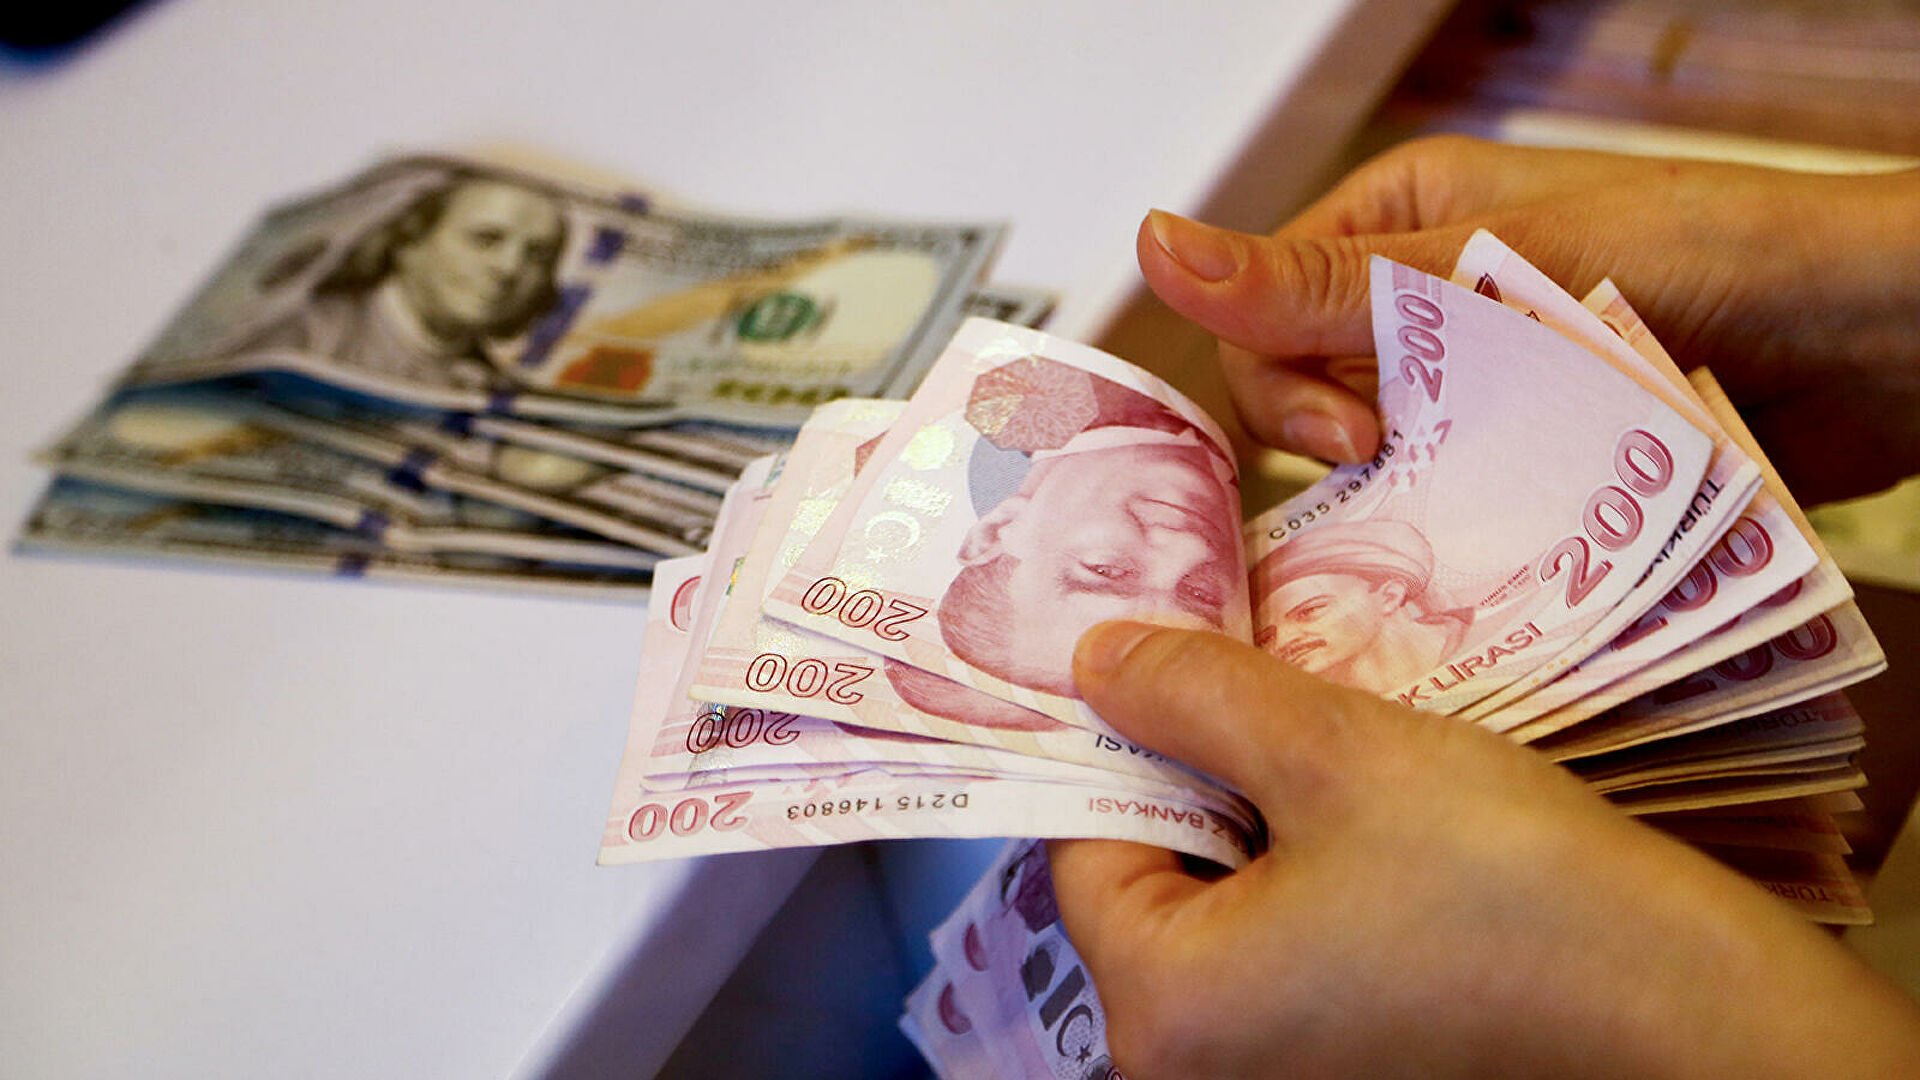 Թուրքական լիրան կրկին արժեզրկվում է դոլարի նկատմամբ